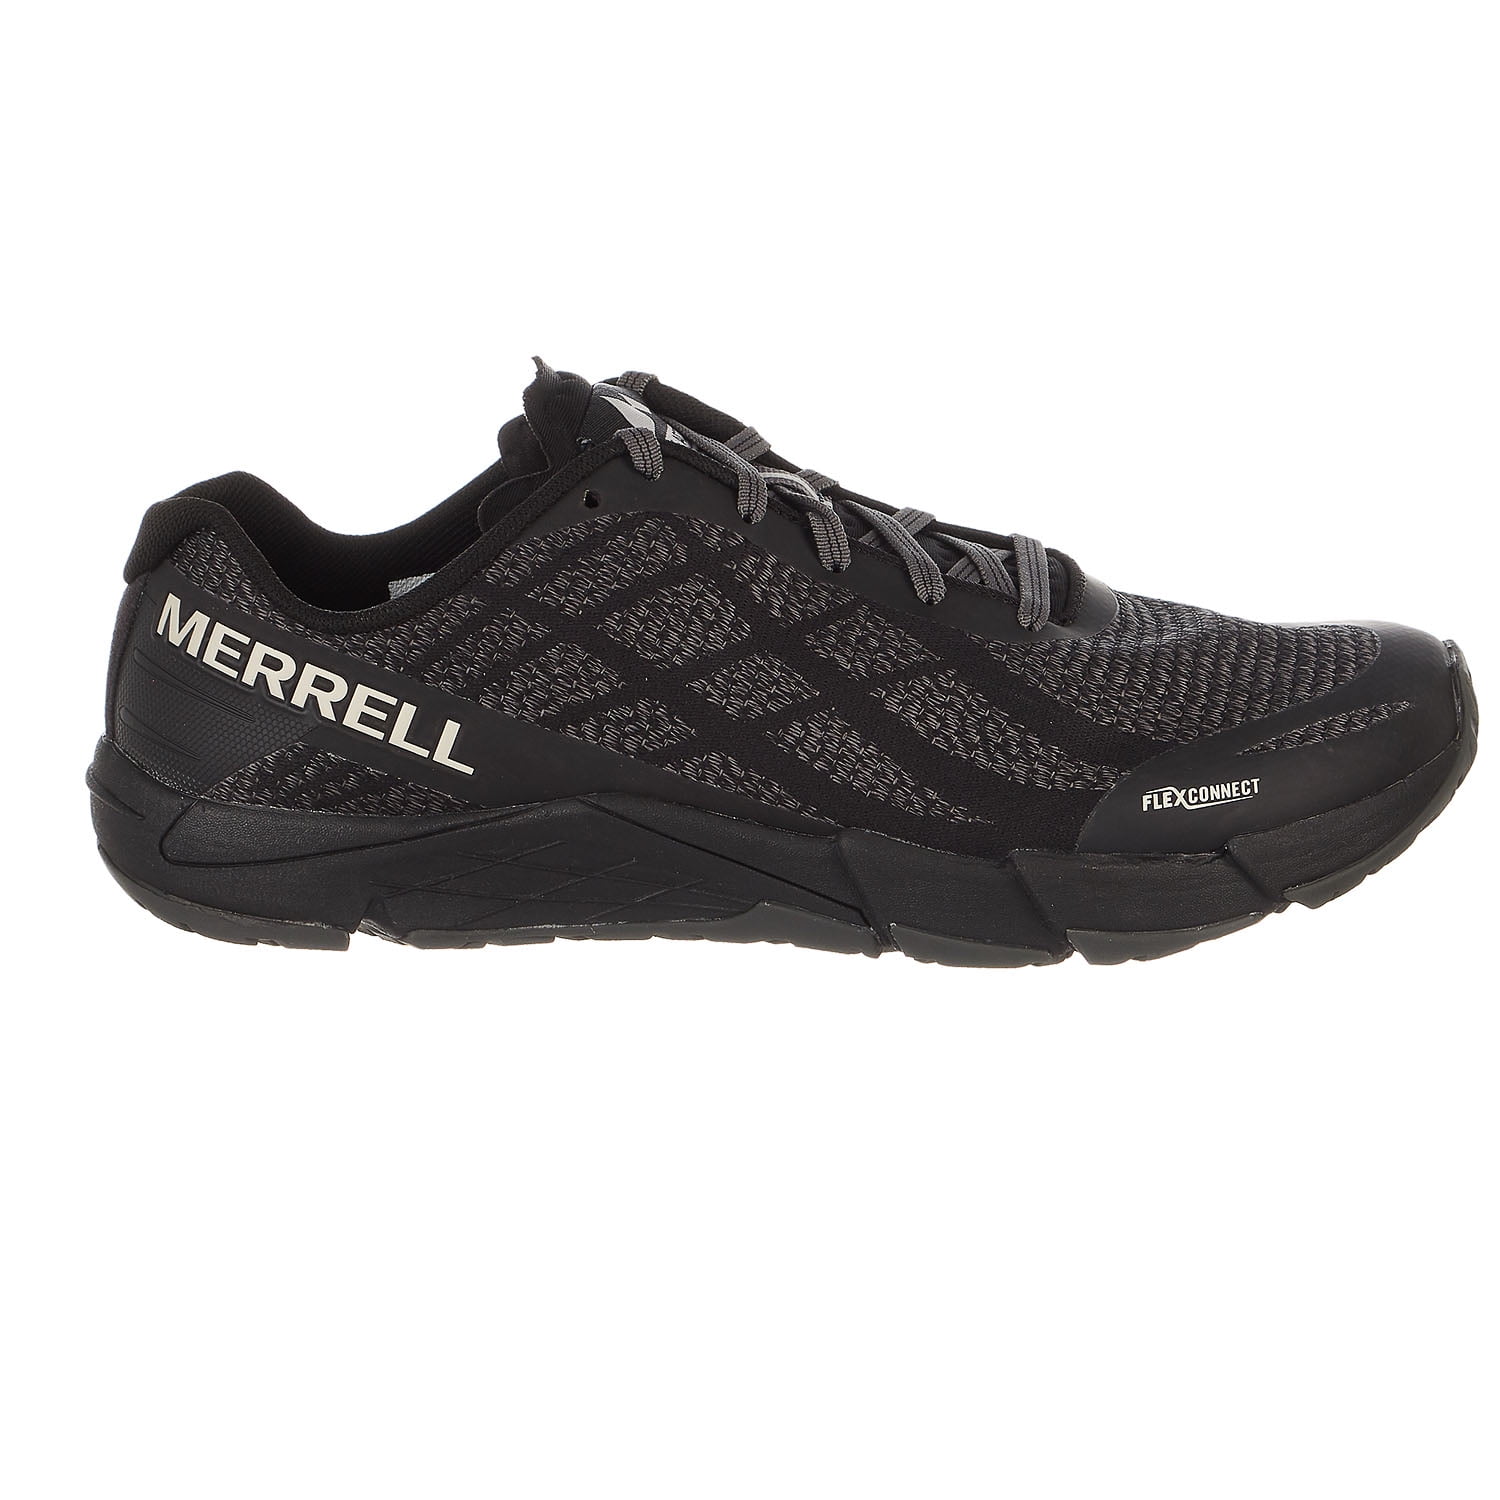 New Merrell Men's Bare Access Flex Shield Athletic Shoes Size 9 M 43 EUR